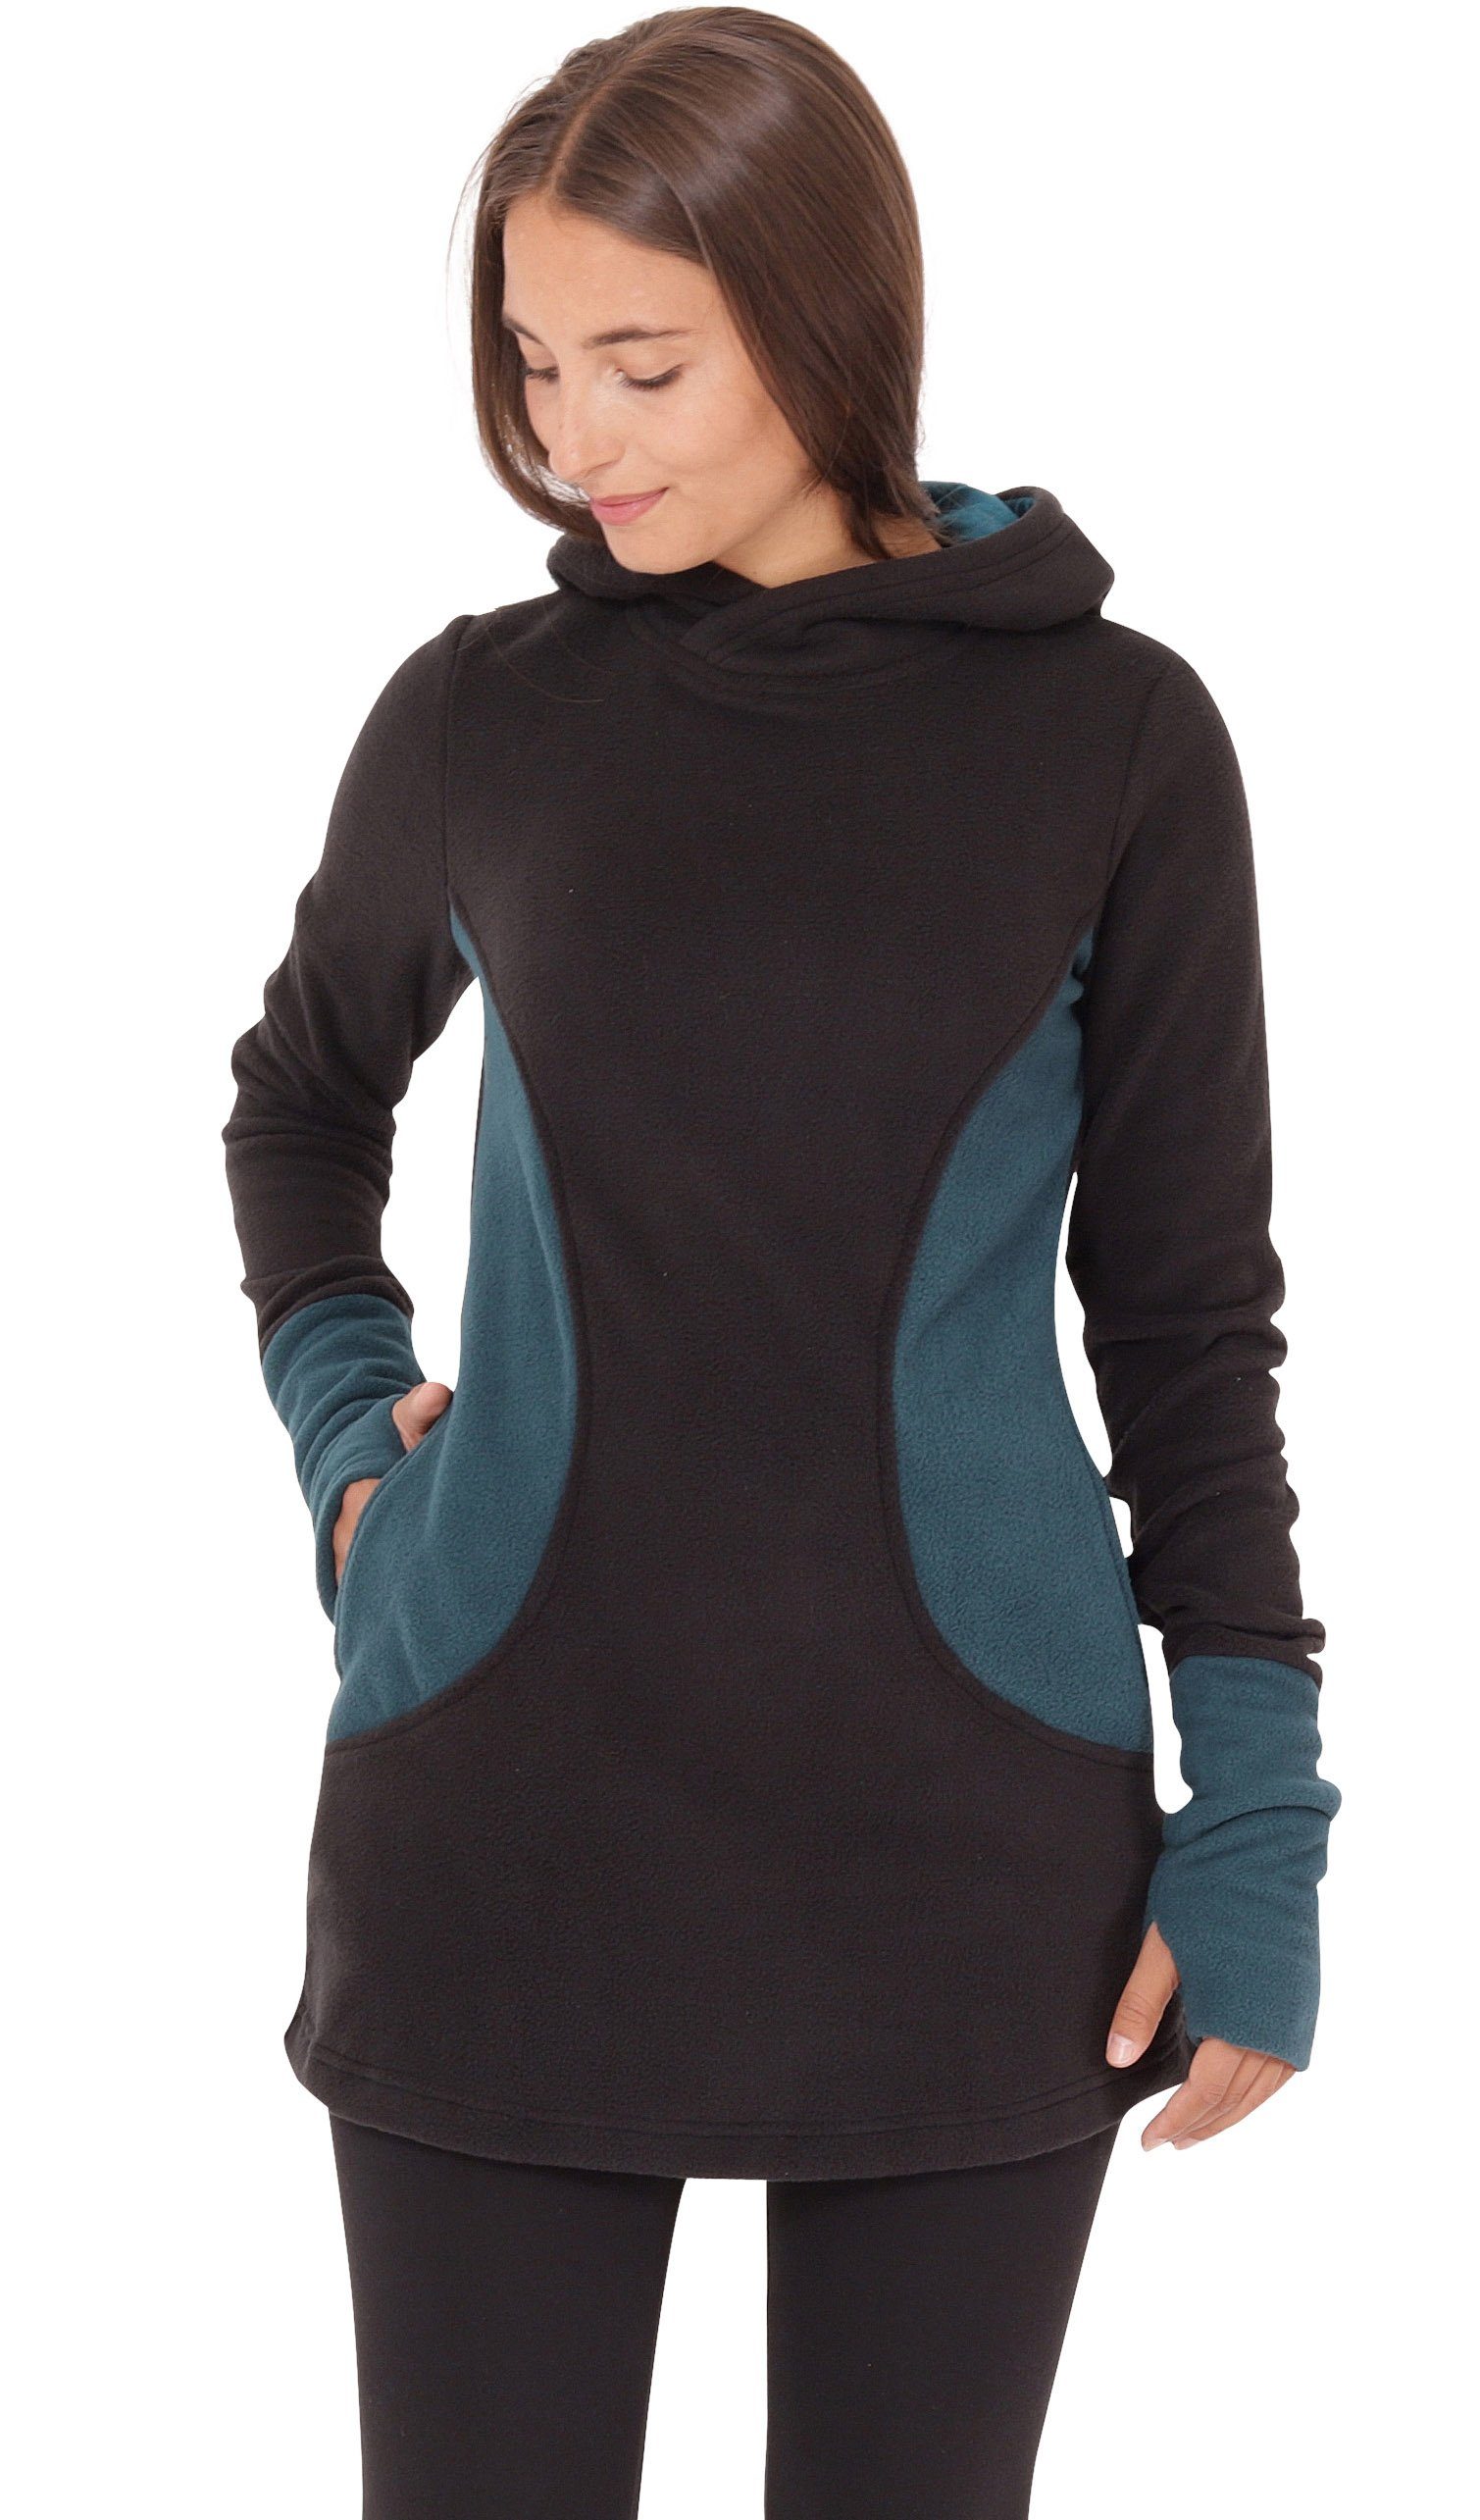 PUREWONDER Pullover und Kleid Fleece Blau dr12 Taschen Kapuzenpullover mit Kapuze und